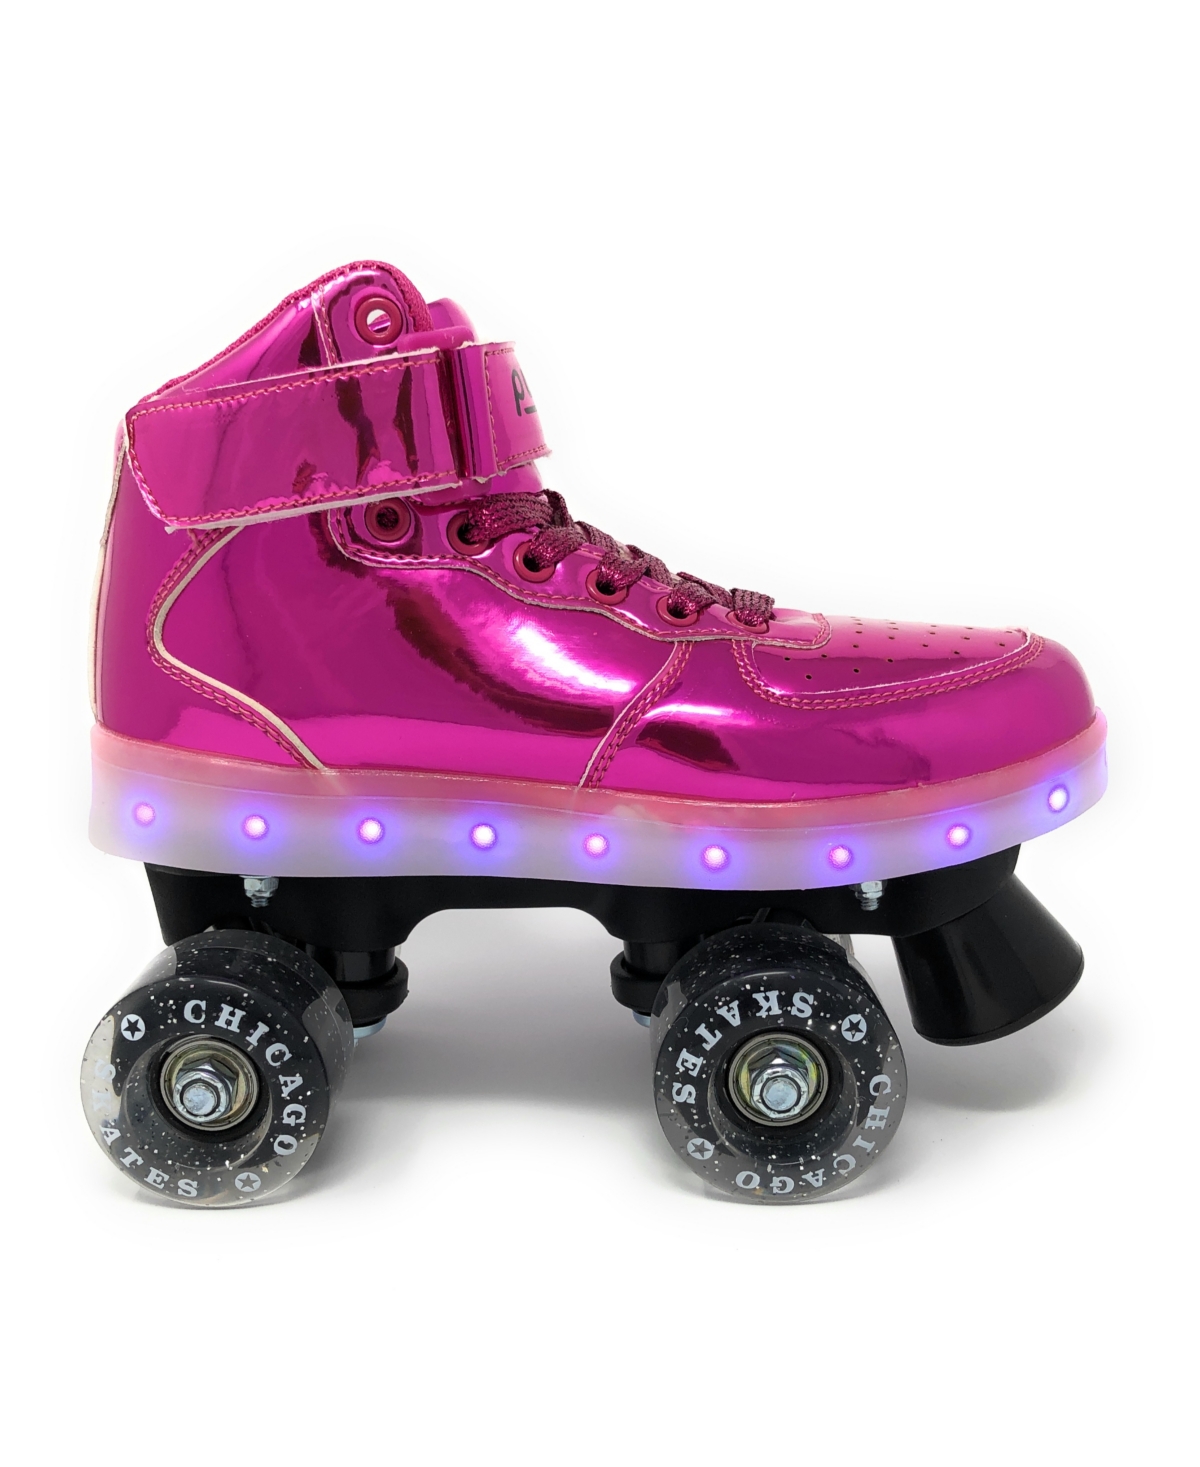 Chicago Pulse Led Light Up Quad Roller Skates, Pink - Size 8 - Pink